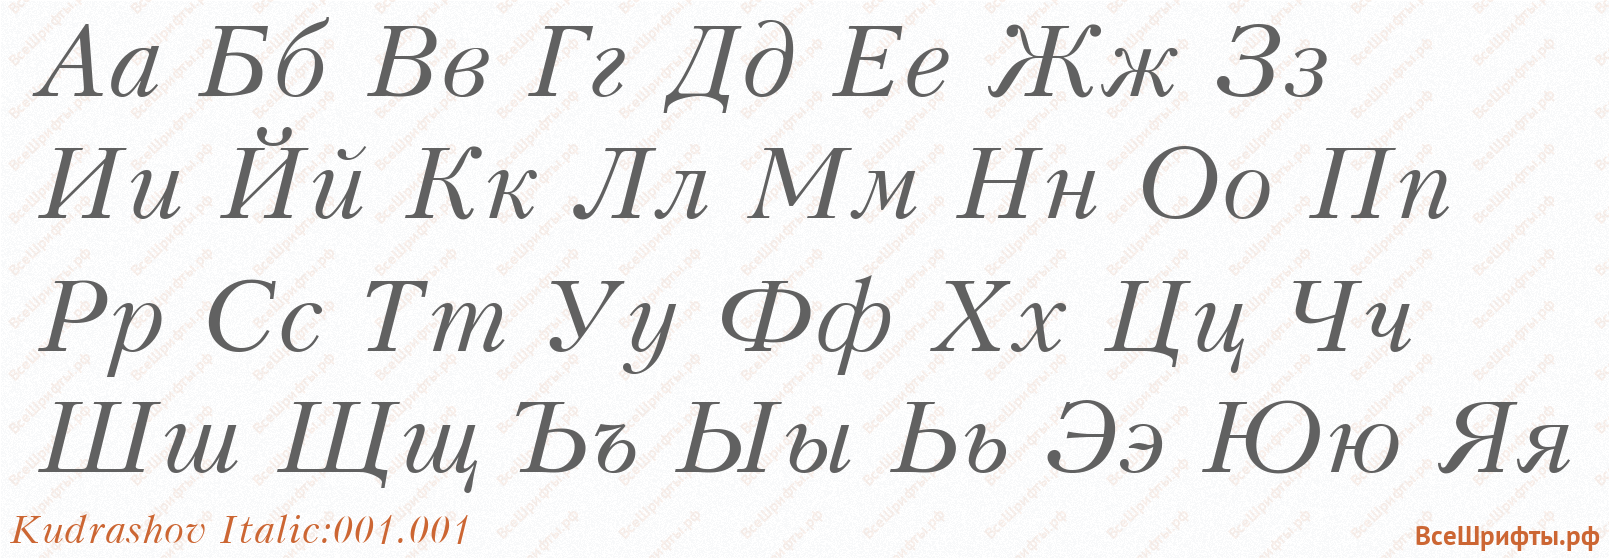 Шрифт Kudrashov Italic:001.001 с русскими буквами